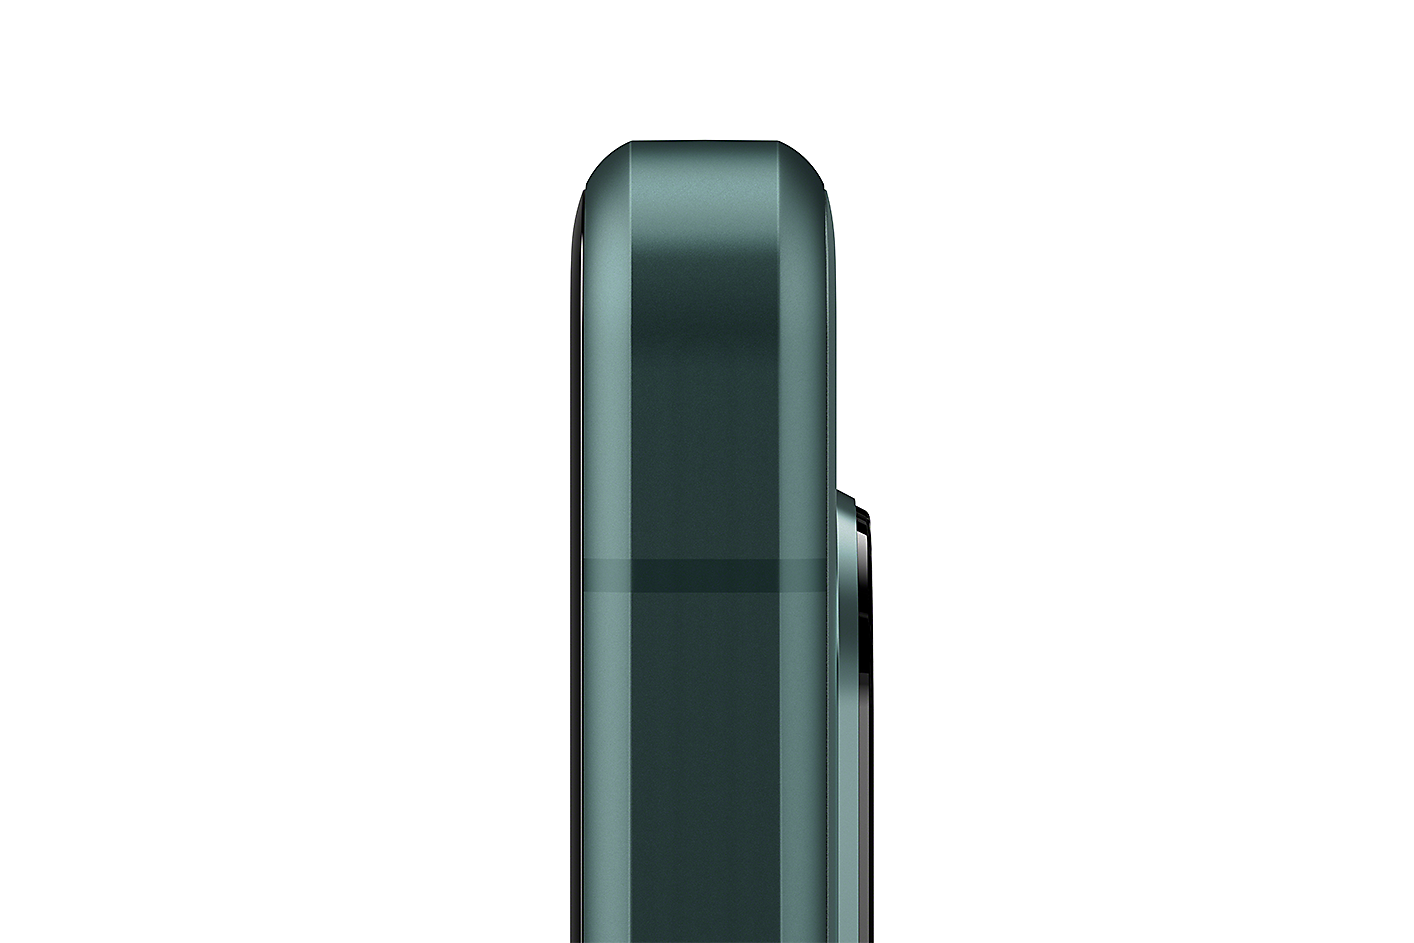 Nærbilde av Xperia 5 IV i grønt som viser den koniske kantdesignen